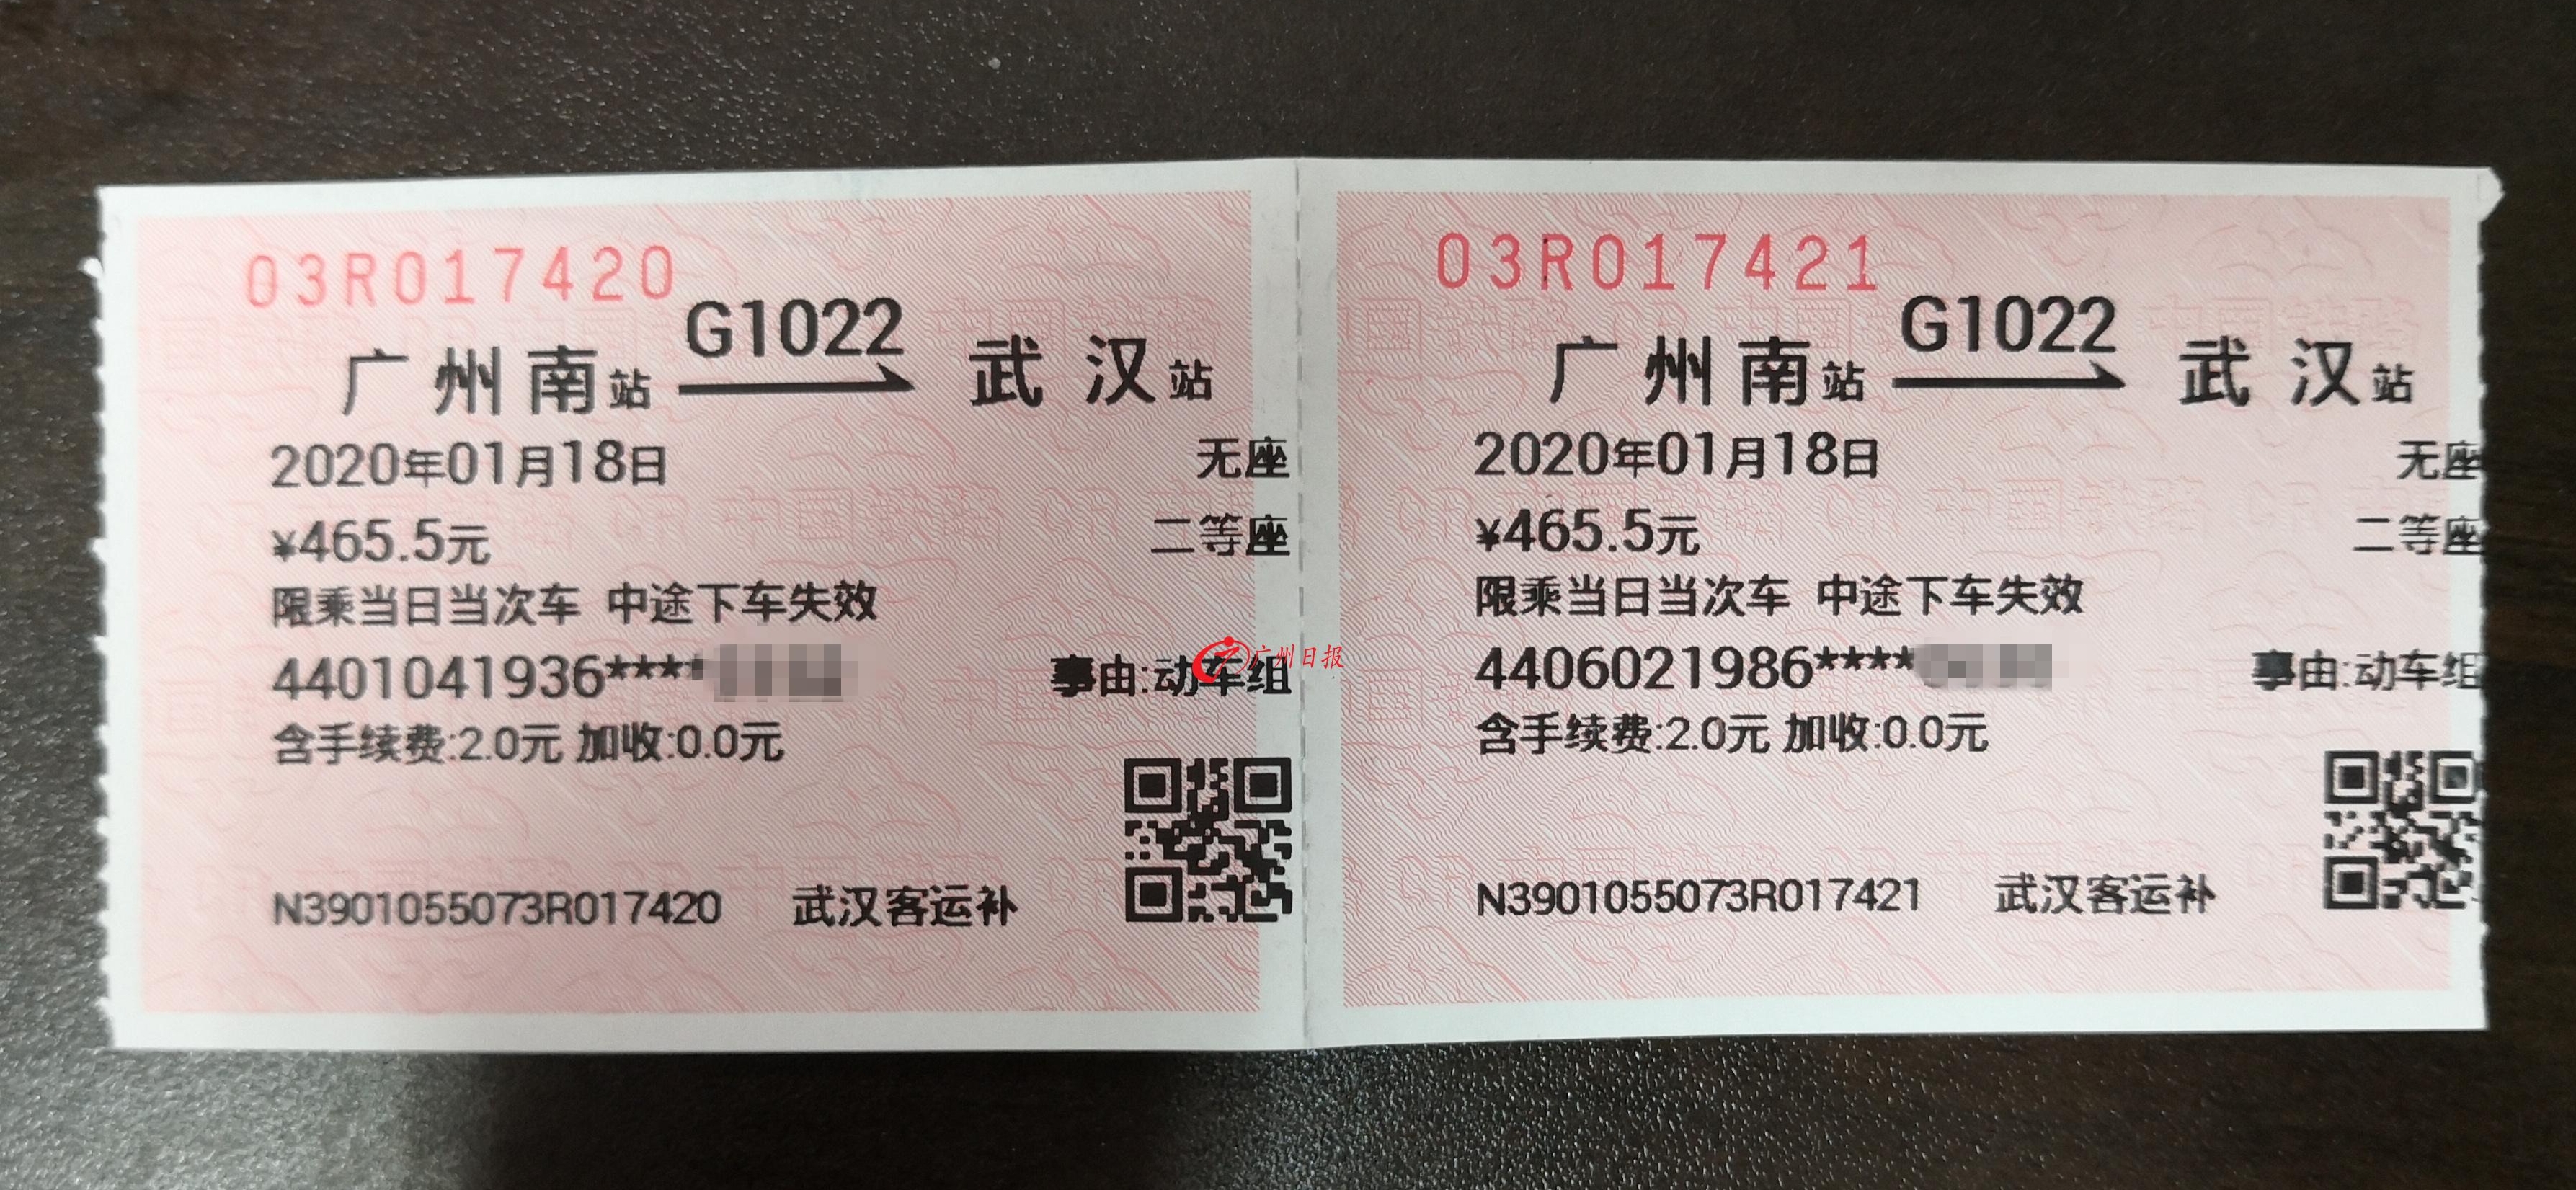 现场,主持人还展示了一张车票这是钟南山院士1月18日前往武汉的车票